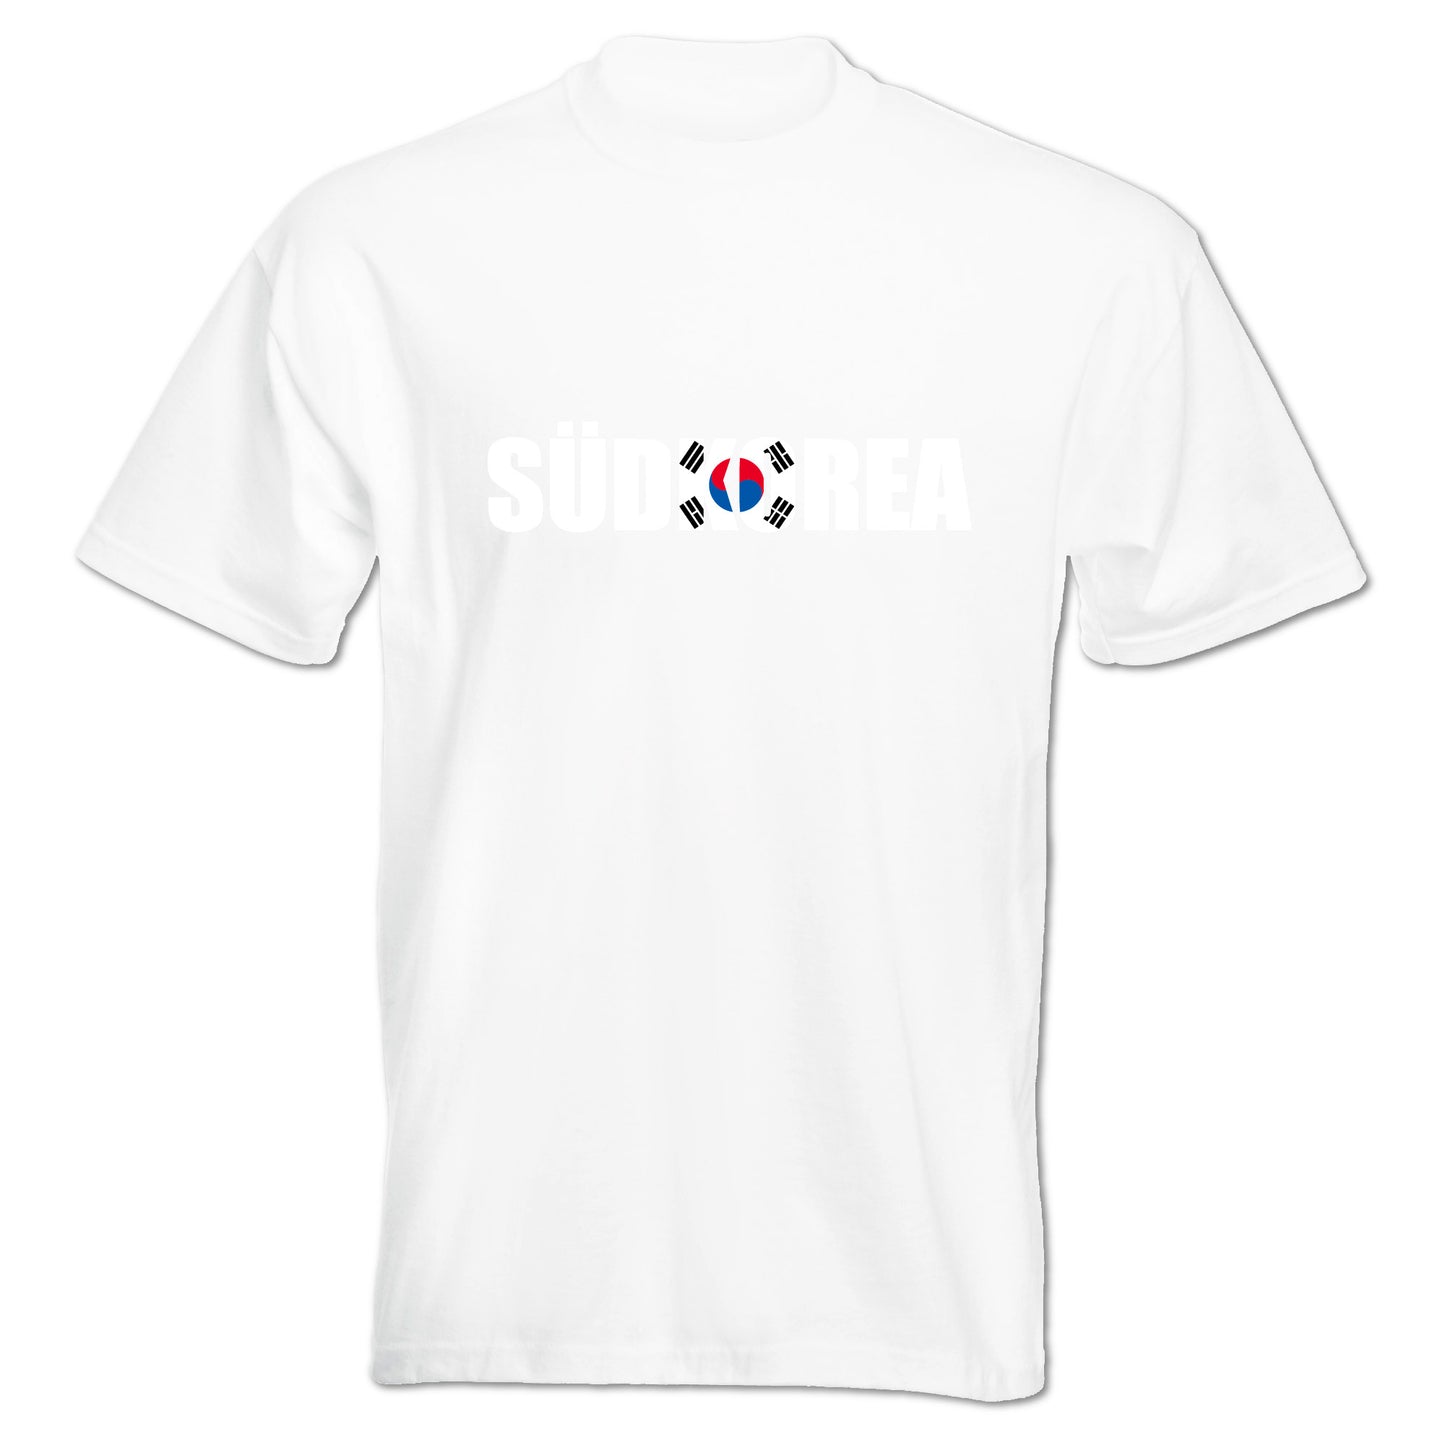 INDIGOS UG - T-Shirt Herren - Südkorea - Schriftzug - Fussball